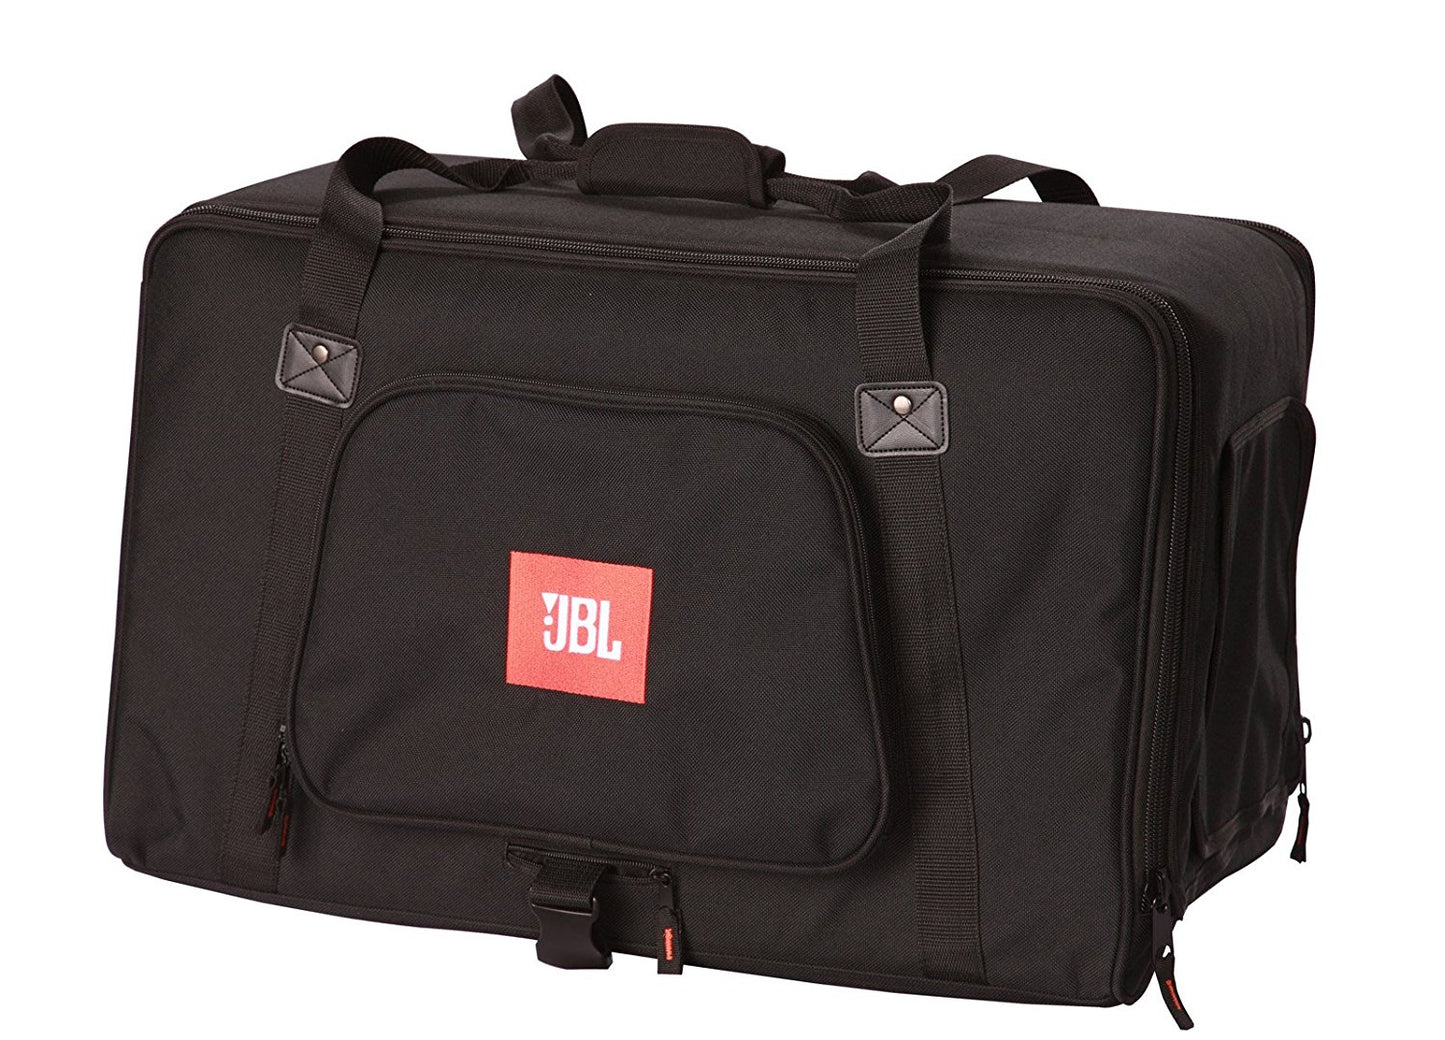 JBL Deluxe Padded Protective Bag for VRX932LA-1 Speaker - Black (VRX932LA-1-BAG)